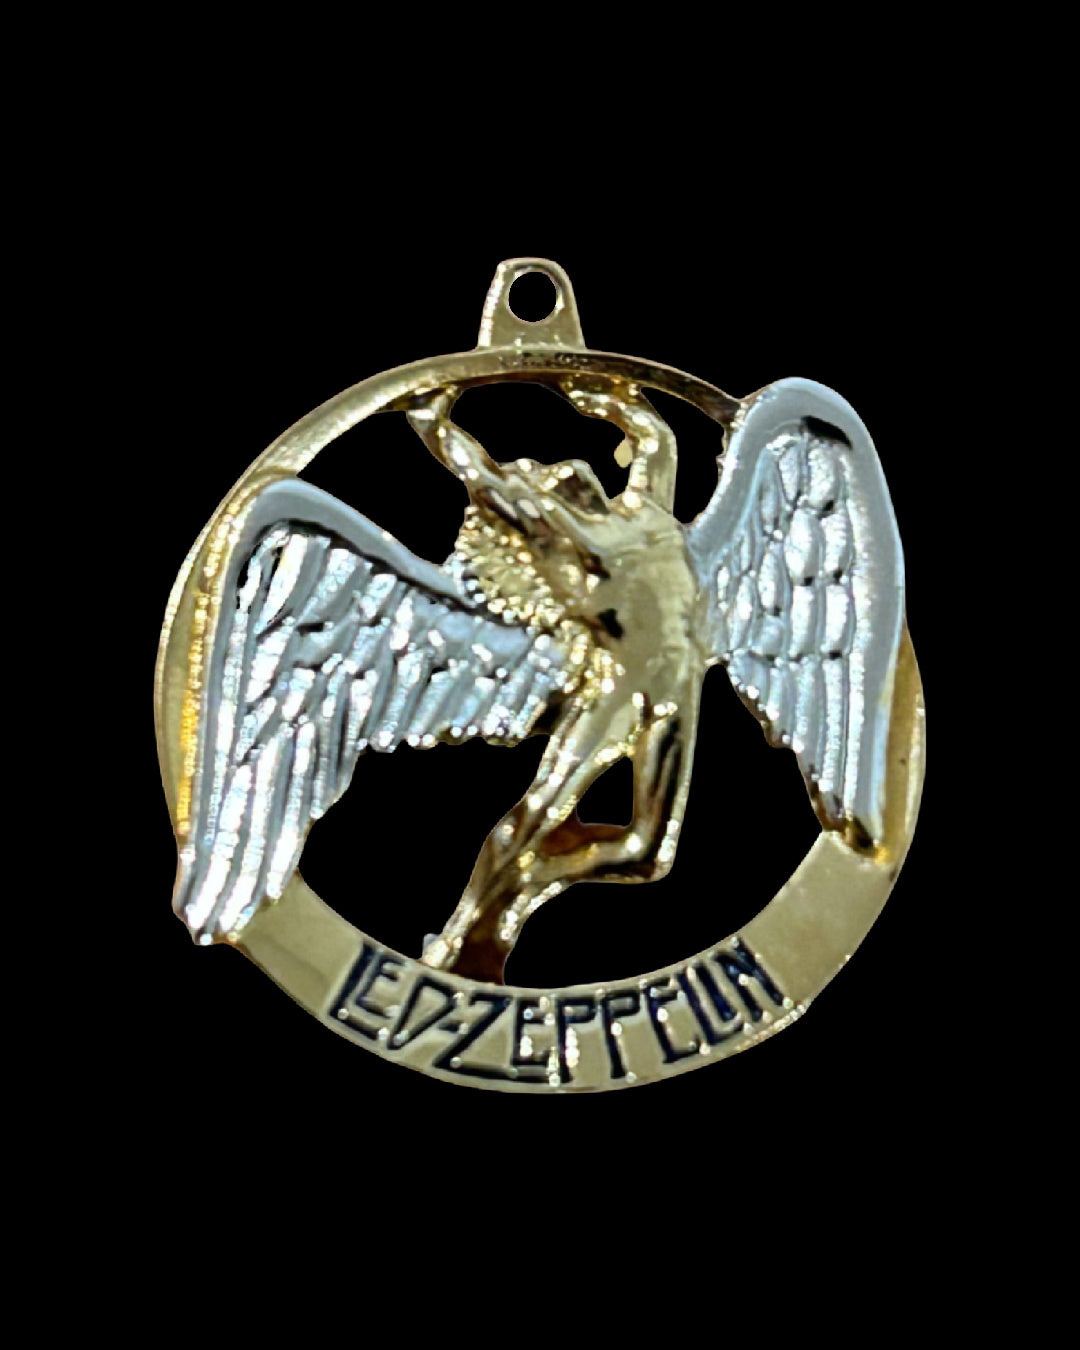 Led Zeppelin 1974 Fallen Angel Swan Song pendant